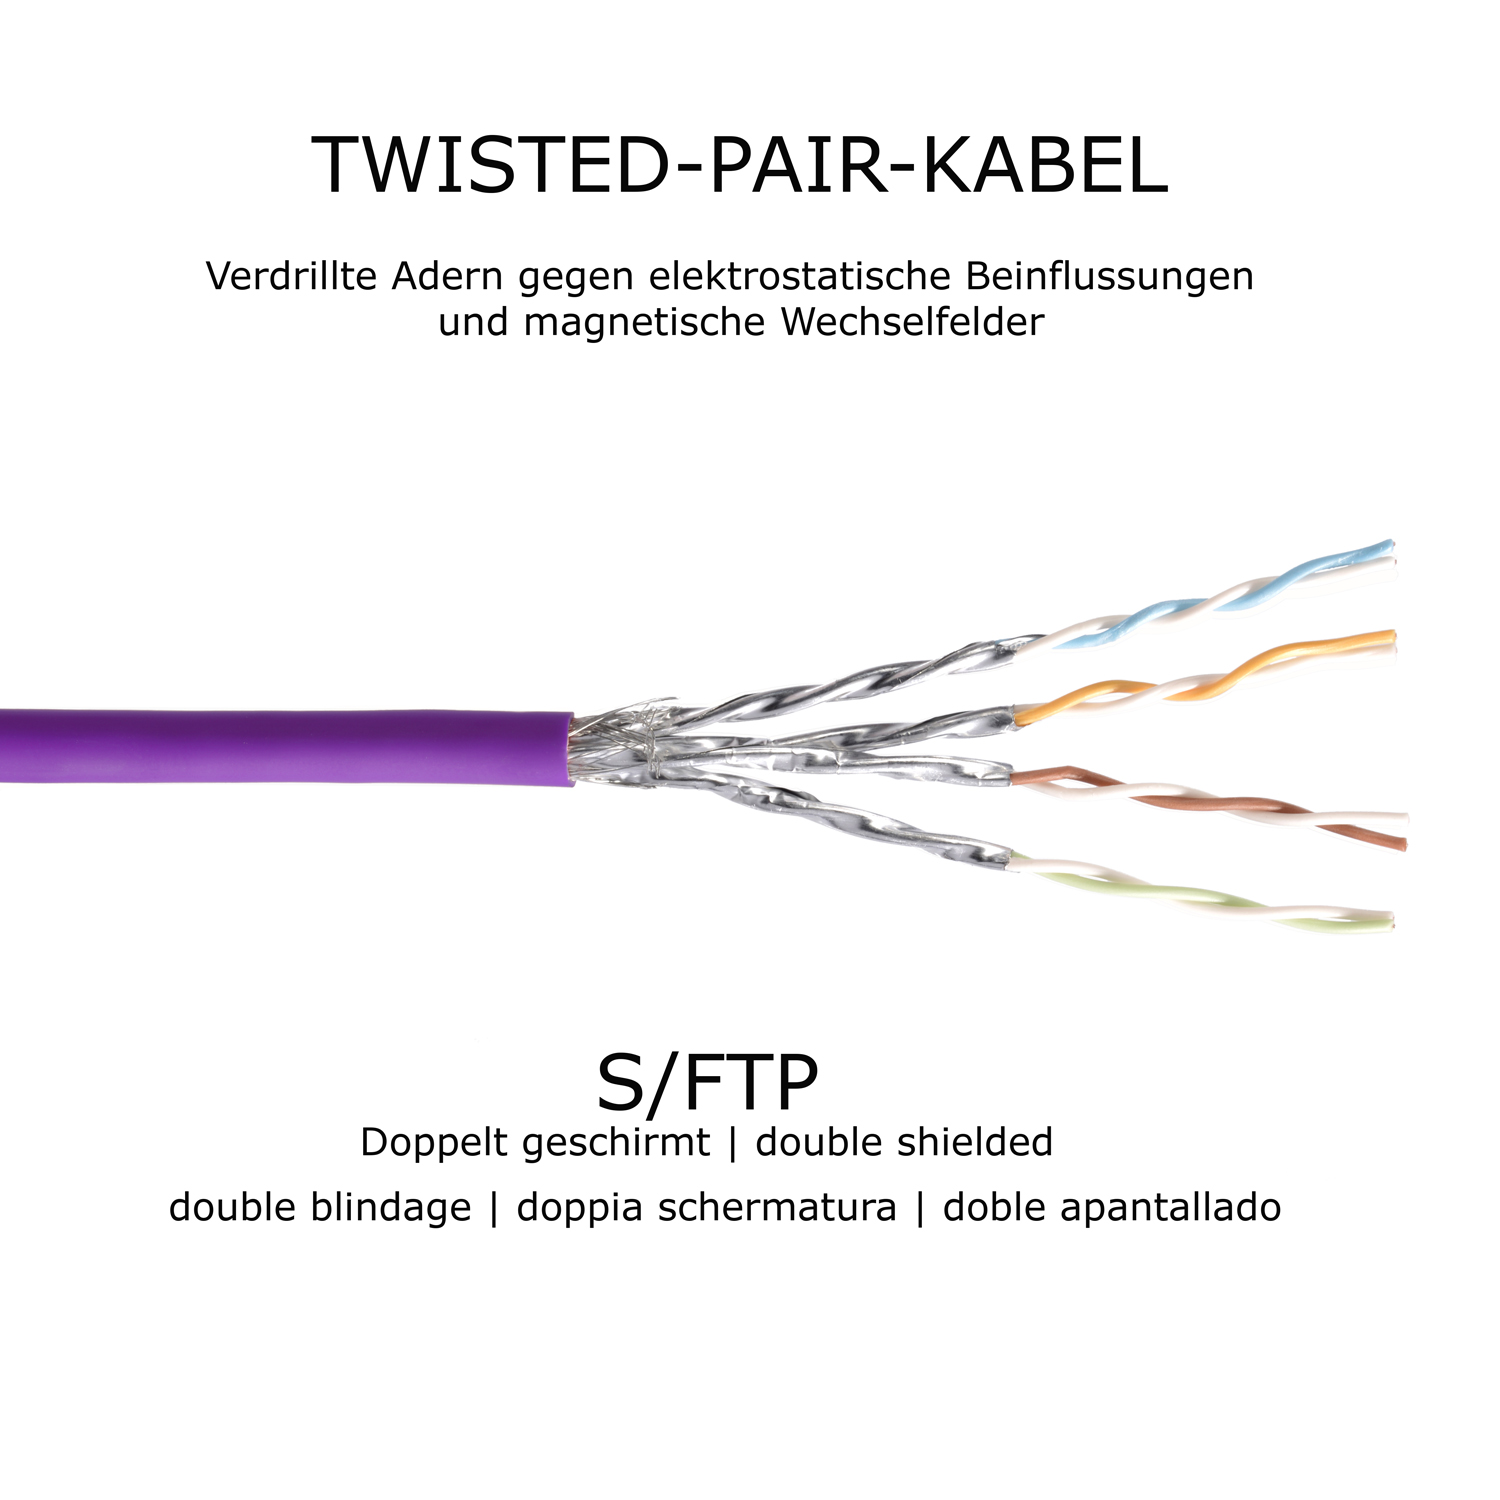 Netzwerkkabel S/FTP violett, Patchkabel m 10GBit, / TPFNET Netzwerkkabel, 10m 10